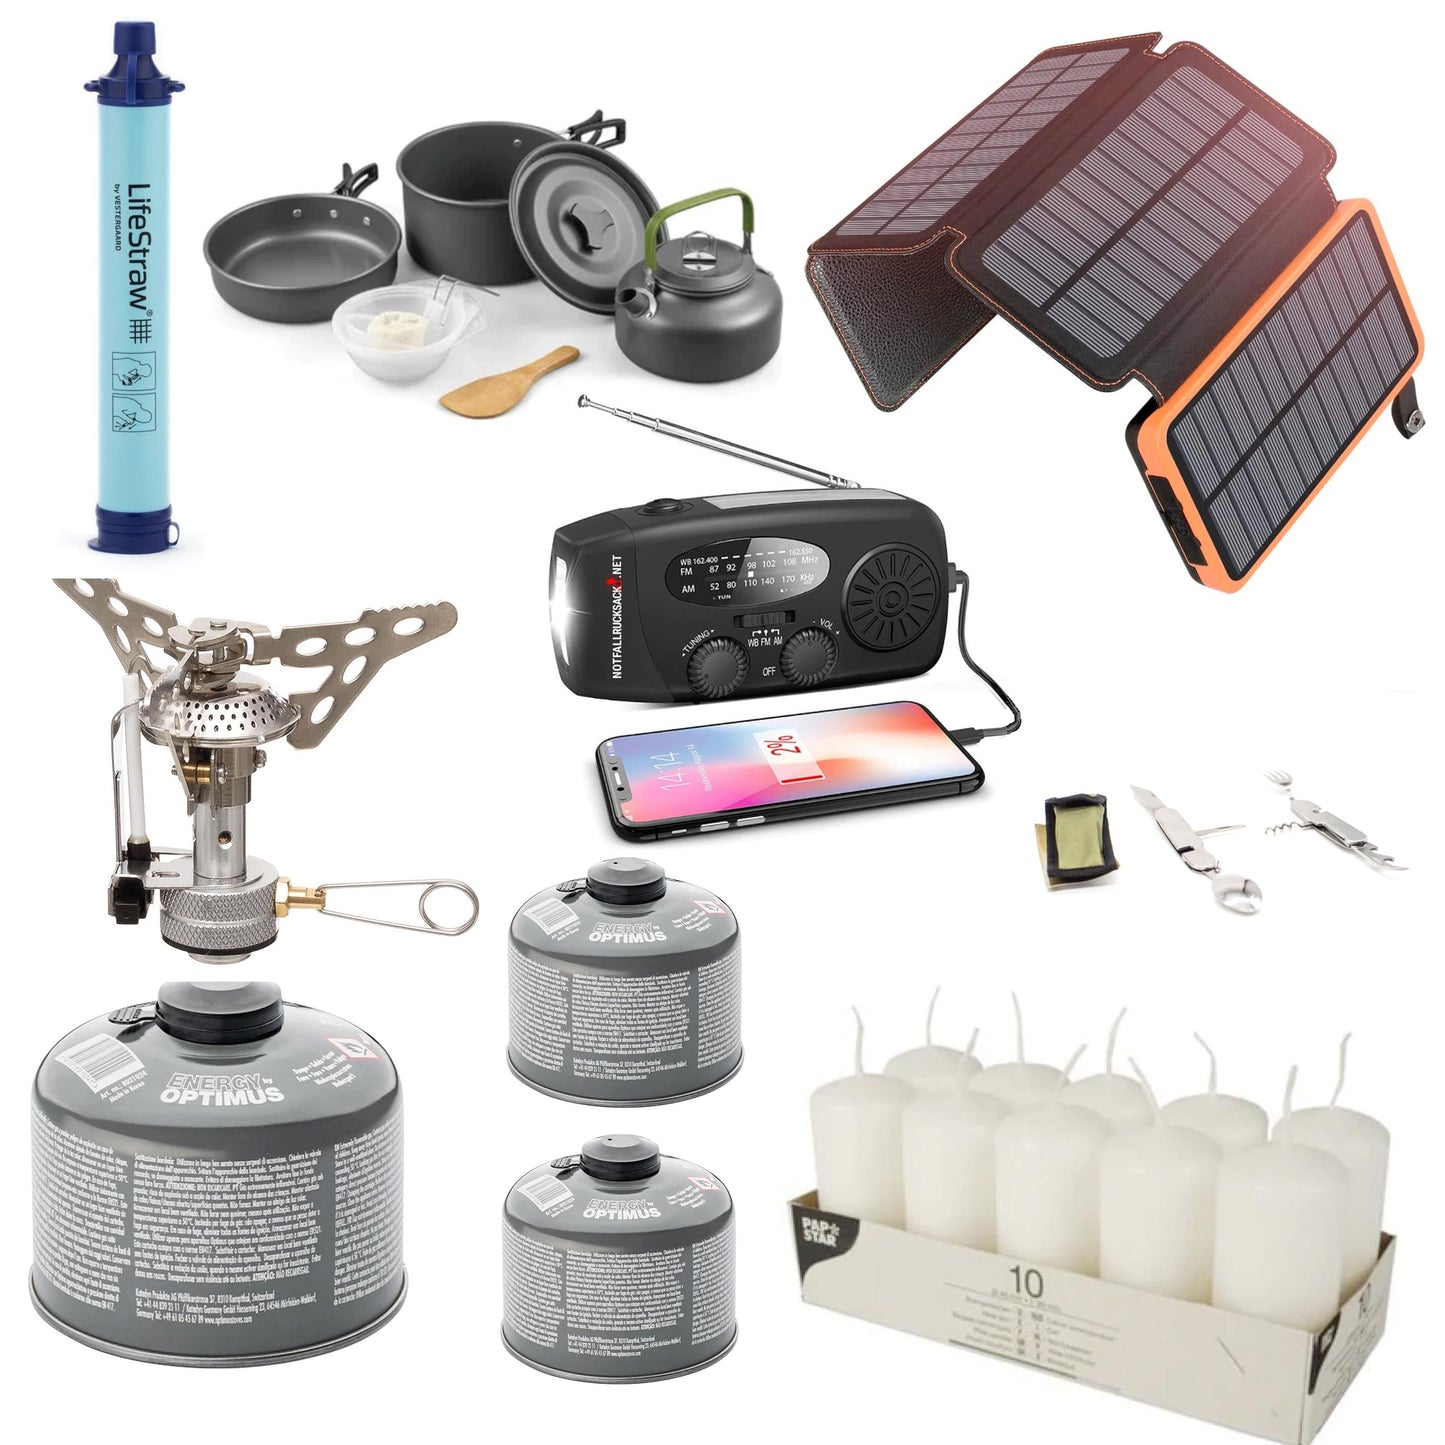 Strömavbrottspaket Extreme Blackout kit - med megakraftverk, solpanel, gasspis, matlagningsset, bestick, solenergibank, vattenfilter, ljus och mycket mer